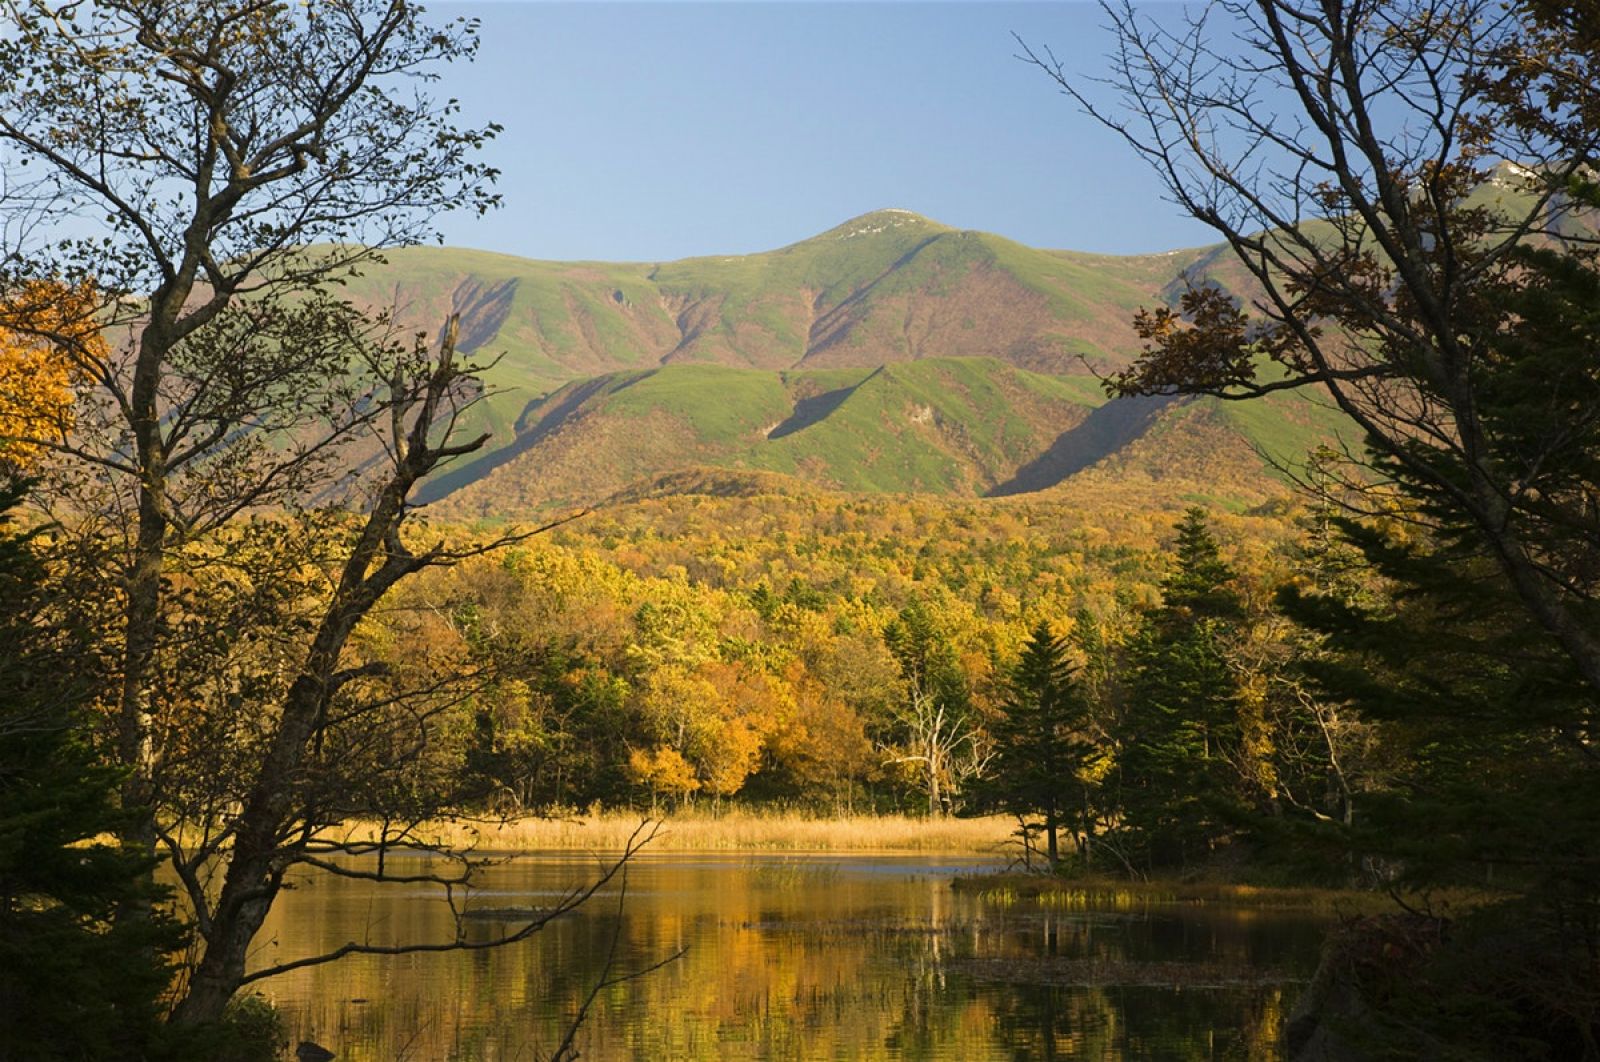 Công viên quốc gia Shiretoko là một trong những nơi xa xôi nhất của Nhật Bản với địa hình hiểm trở, khó tiếp cận